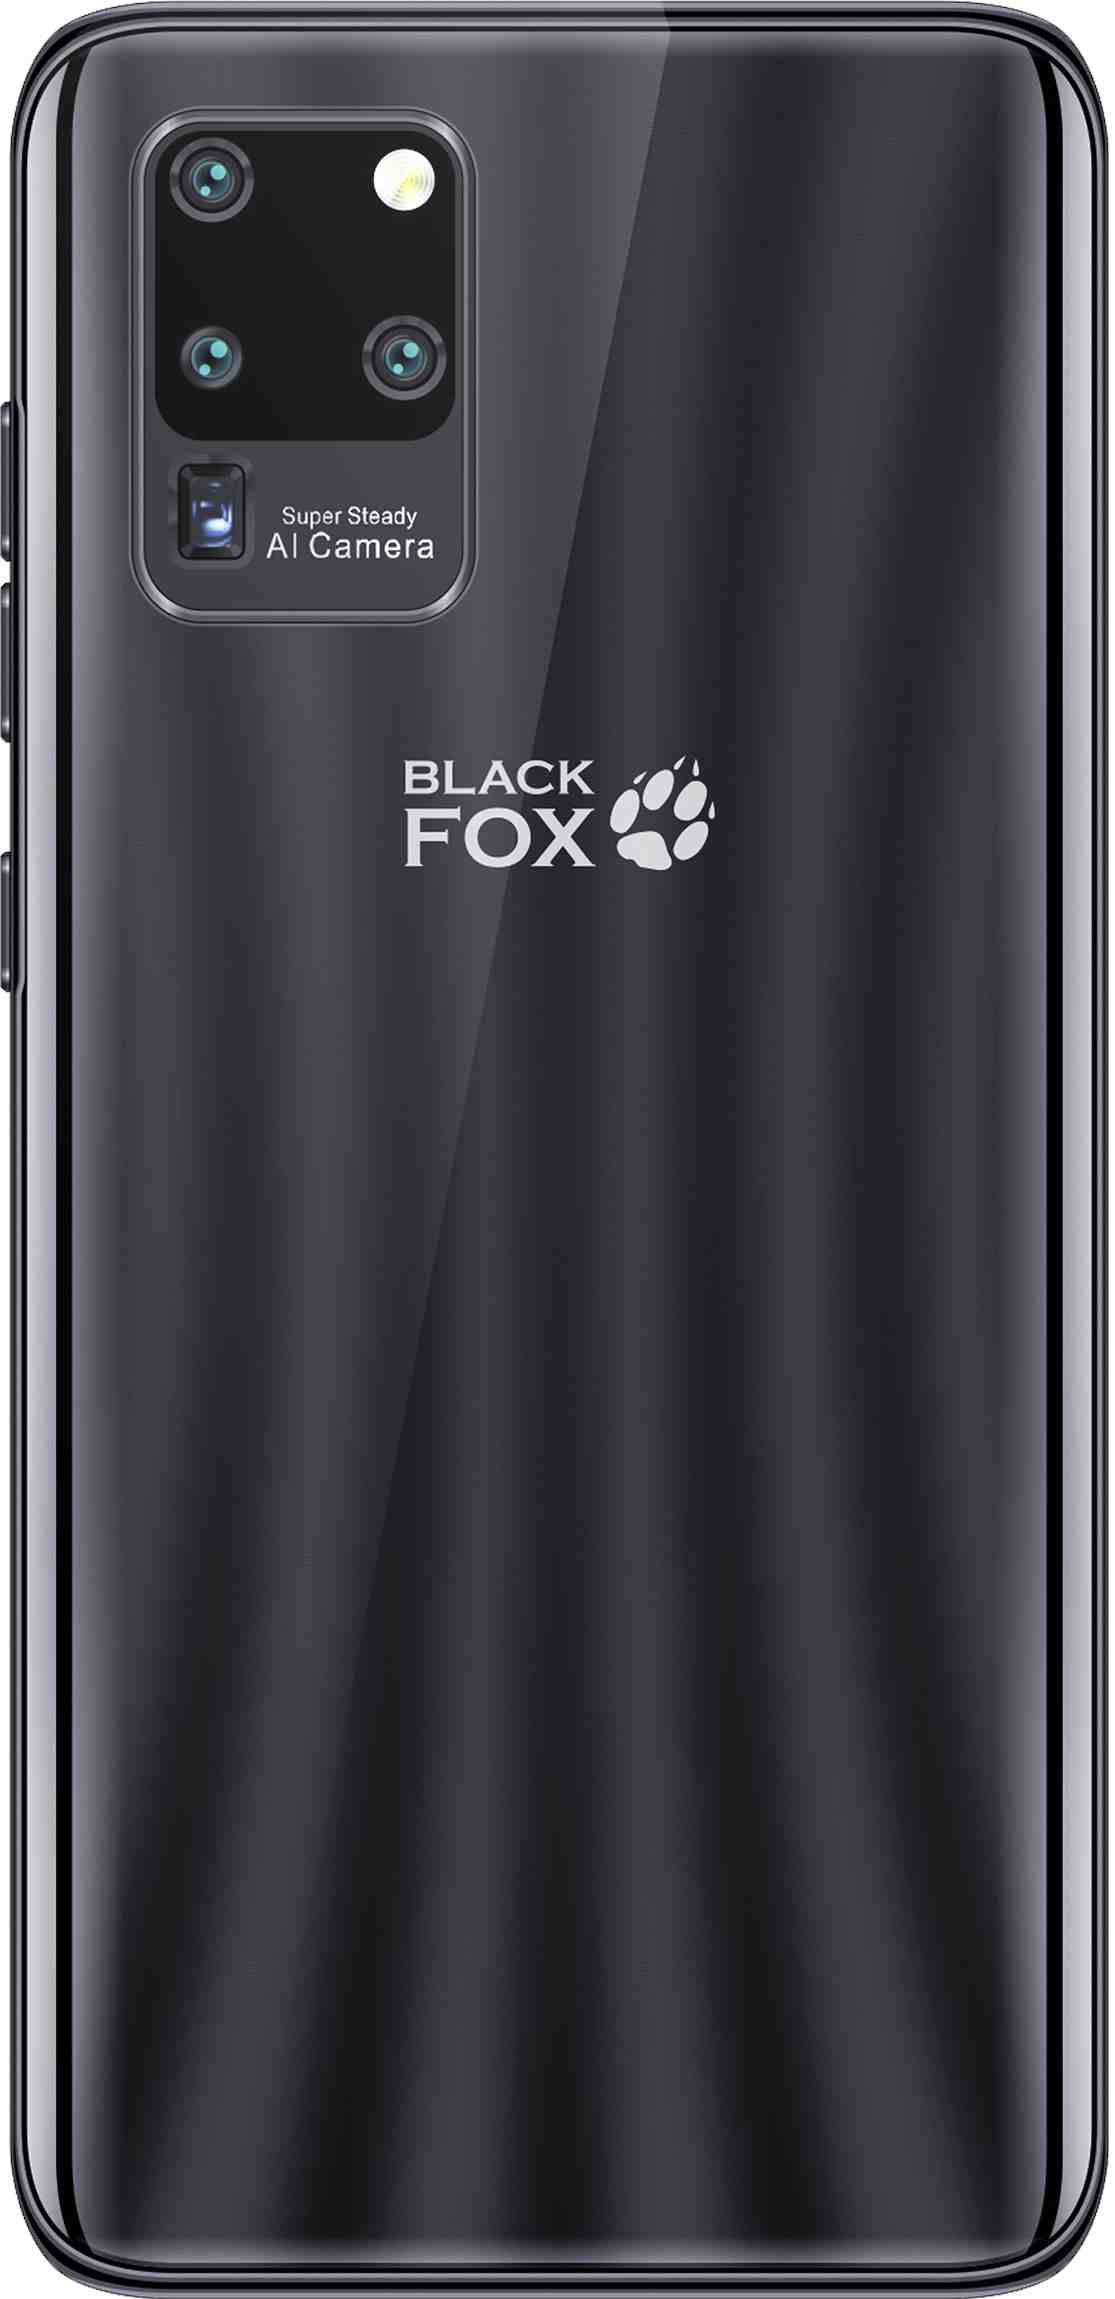 Black Fox B2 Fox Plus